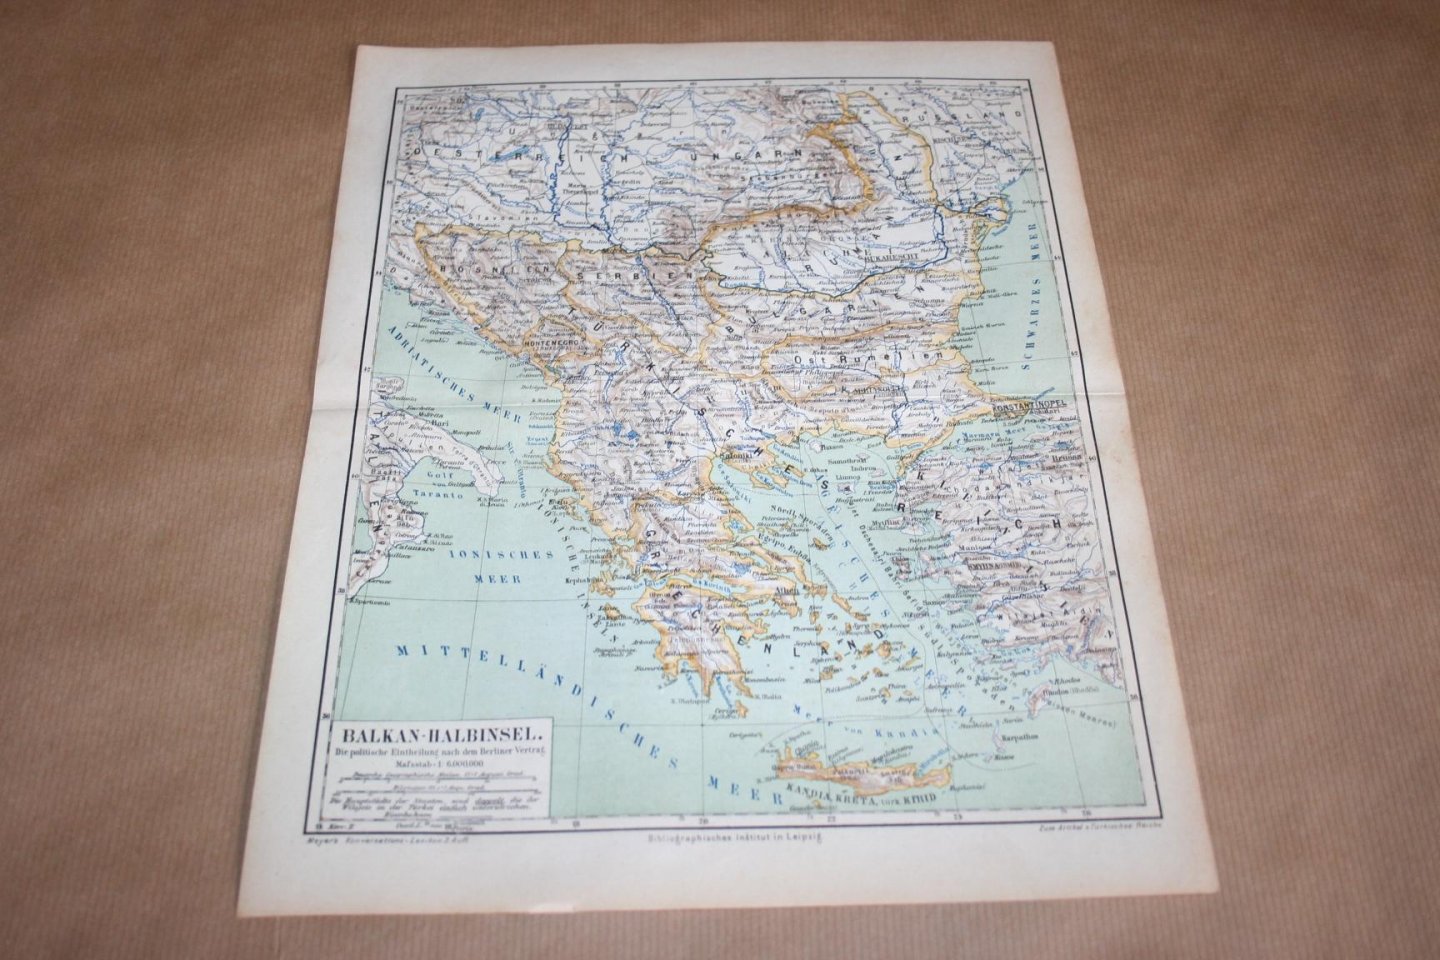  - Antieke kaart - Landen van de Balkan (Bosnië, Servië, Bulgarije, Montenegro etc.) - Circa 1875